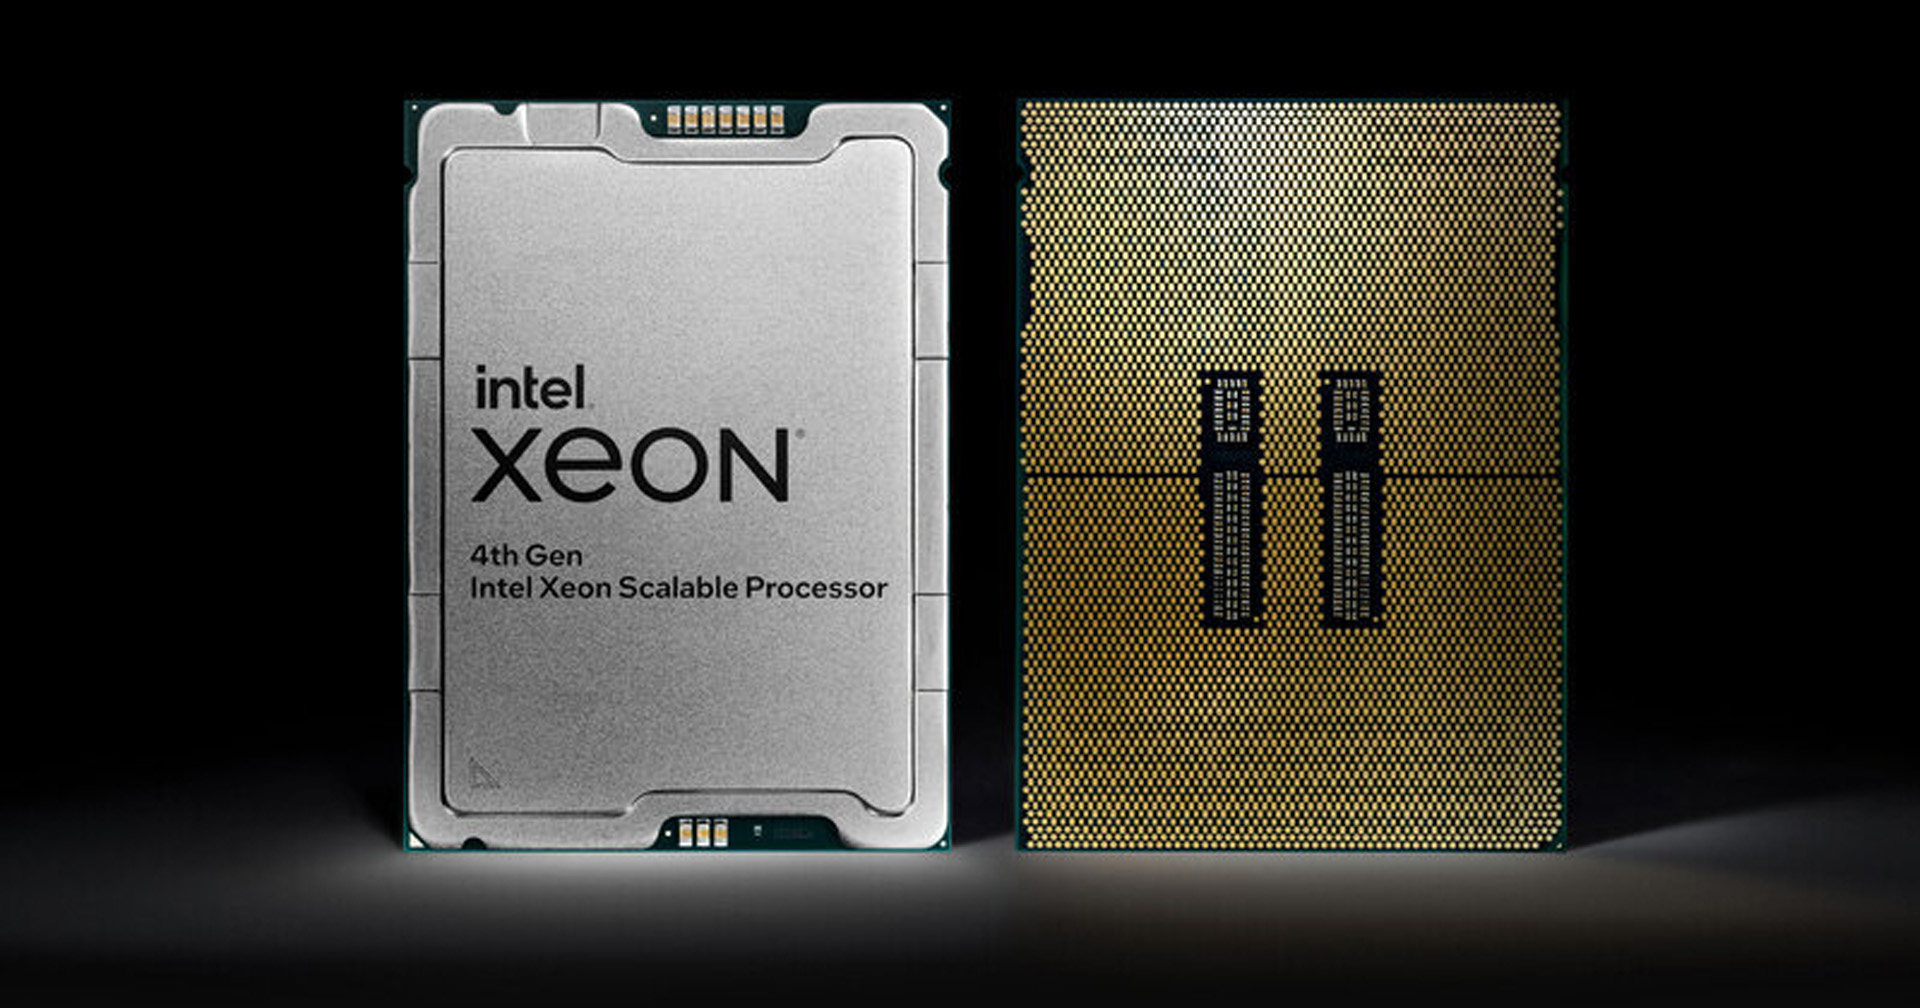 อินเทลเปิดตัวโปรเซสเซอร์ Intel Xeon Scalable เจนเนอเรชั่น 4 ใหม่ล่าสุด พร้อมซีพียูและจีพียู Max ซีรีส์